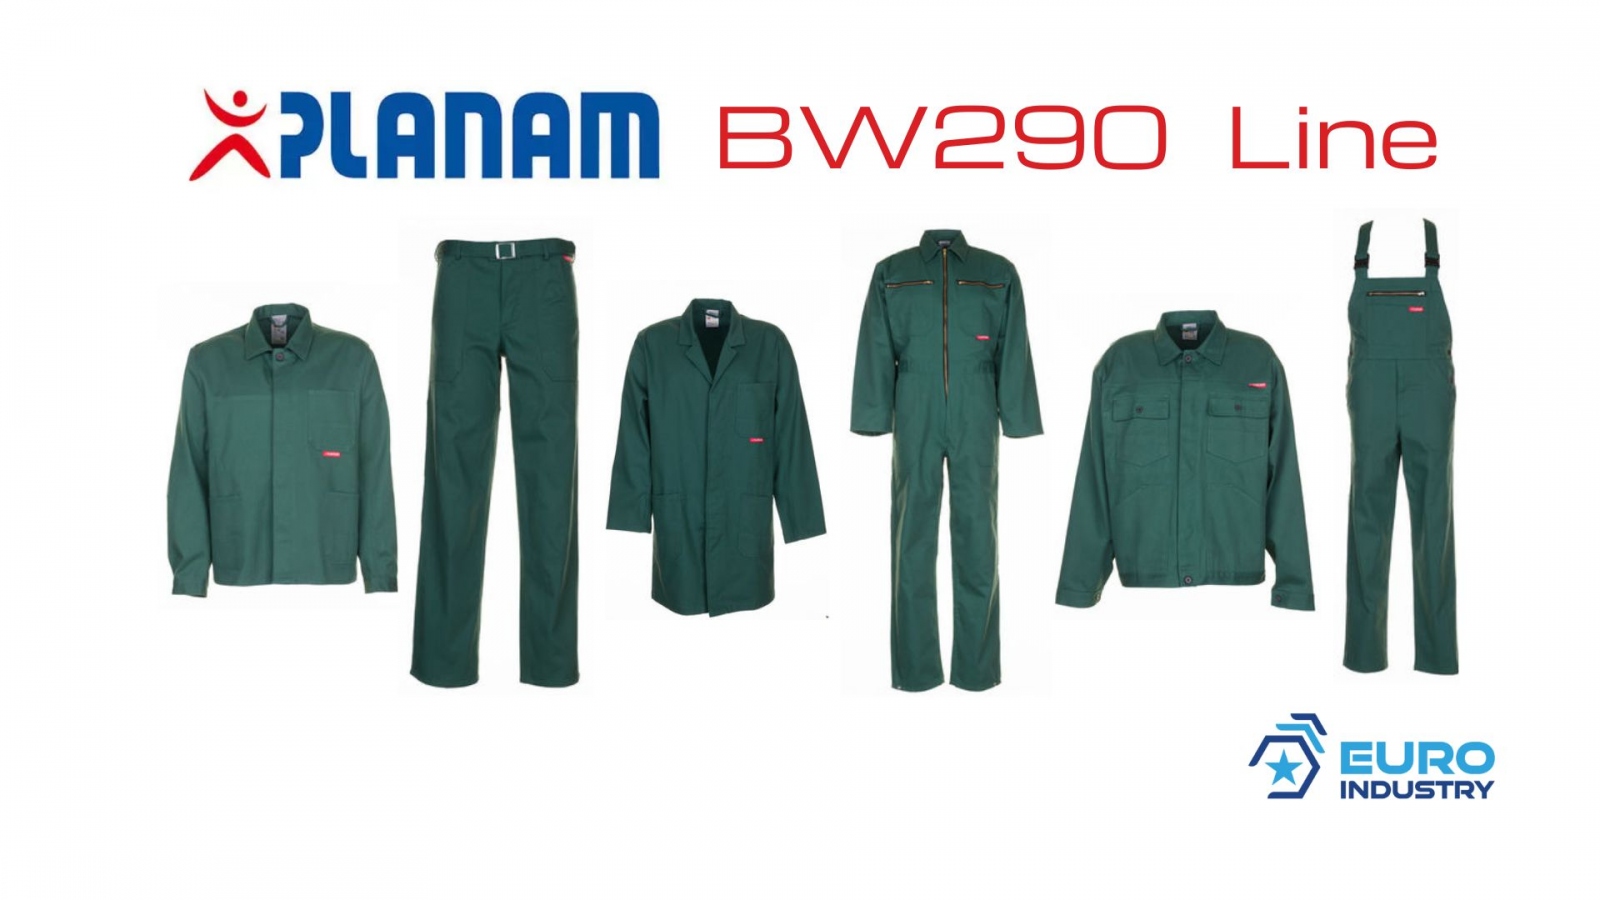 pics/Planam/bw-290/planam-bw-290-linie-mittelgruen-baumwolle-details.jpg